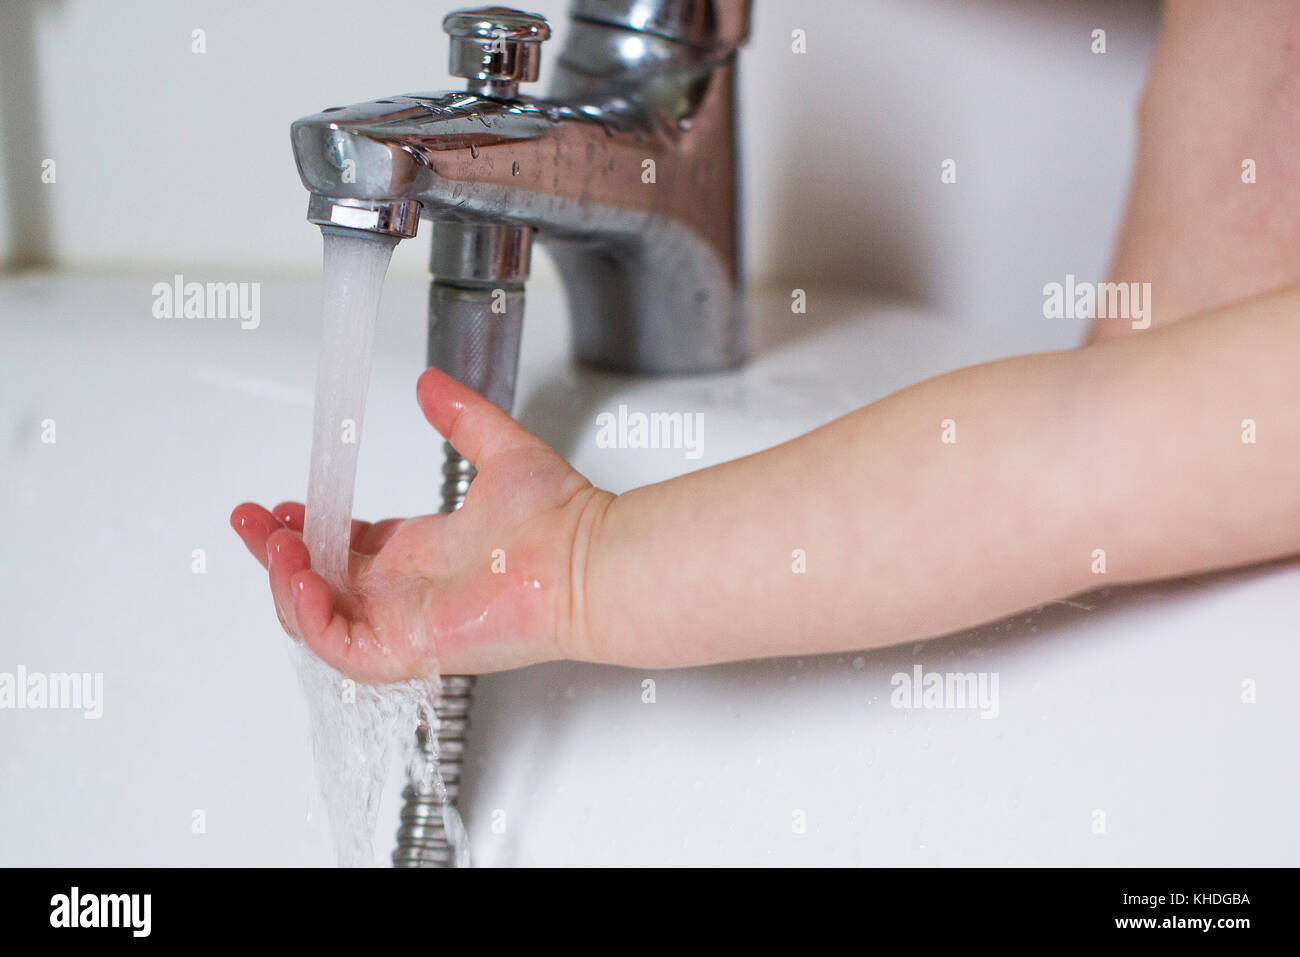 La main de l'enfant bain d'essai Température de l'eau Banque D'Images